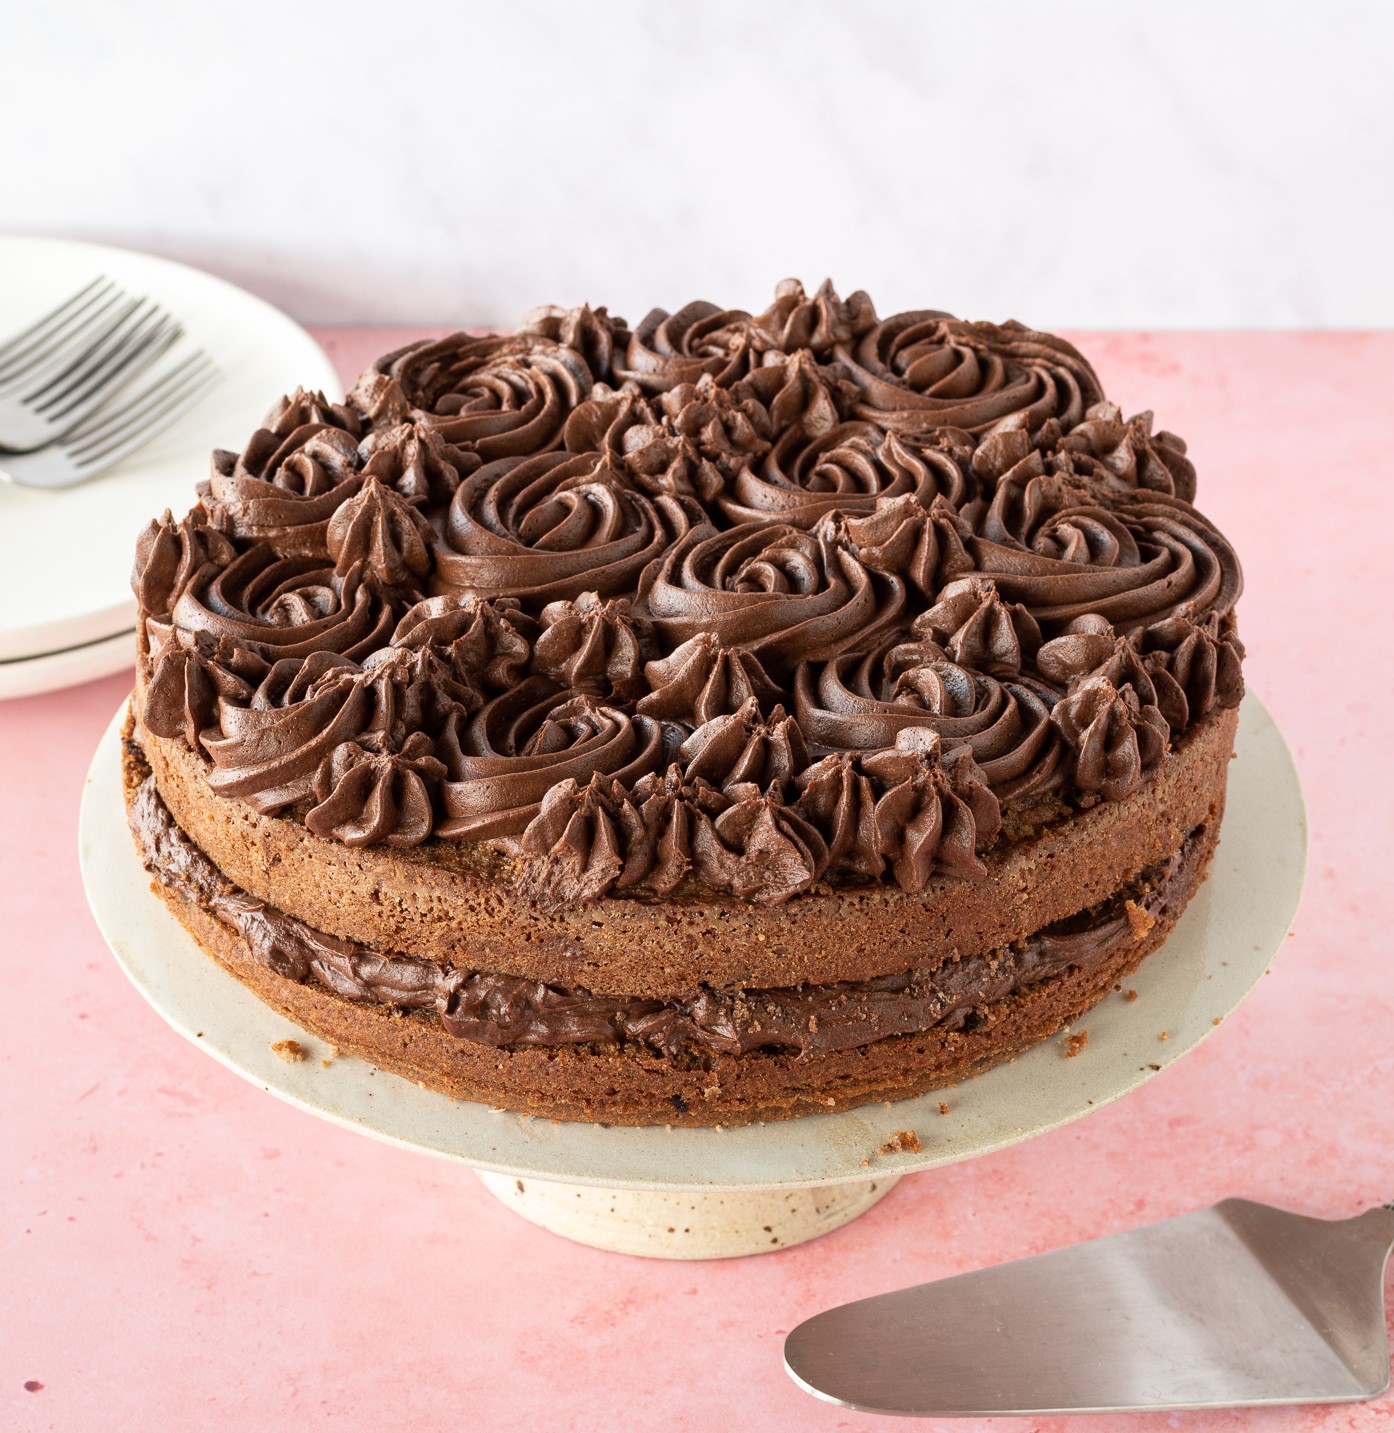 Chocolade cake maken? Bekijk onze chocolade cake recepten - Jumbo — Jumbo  Supermarkten